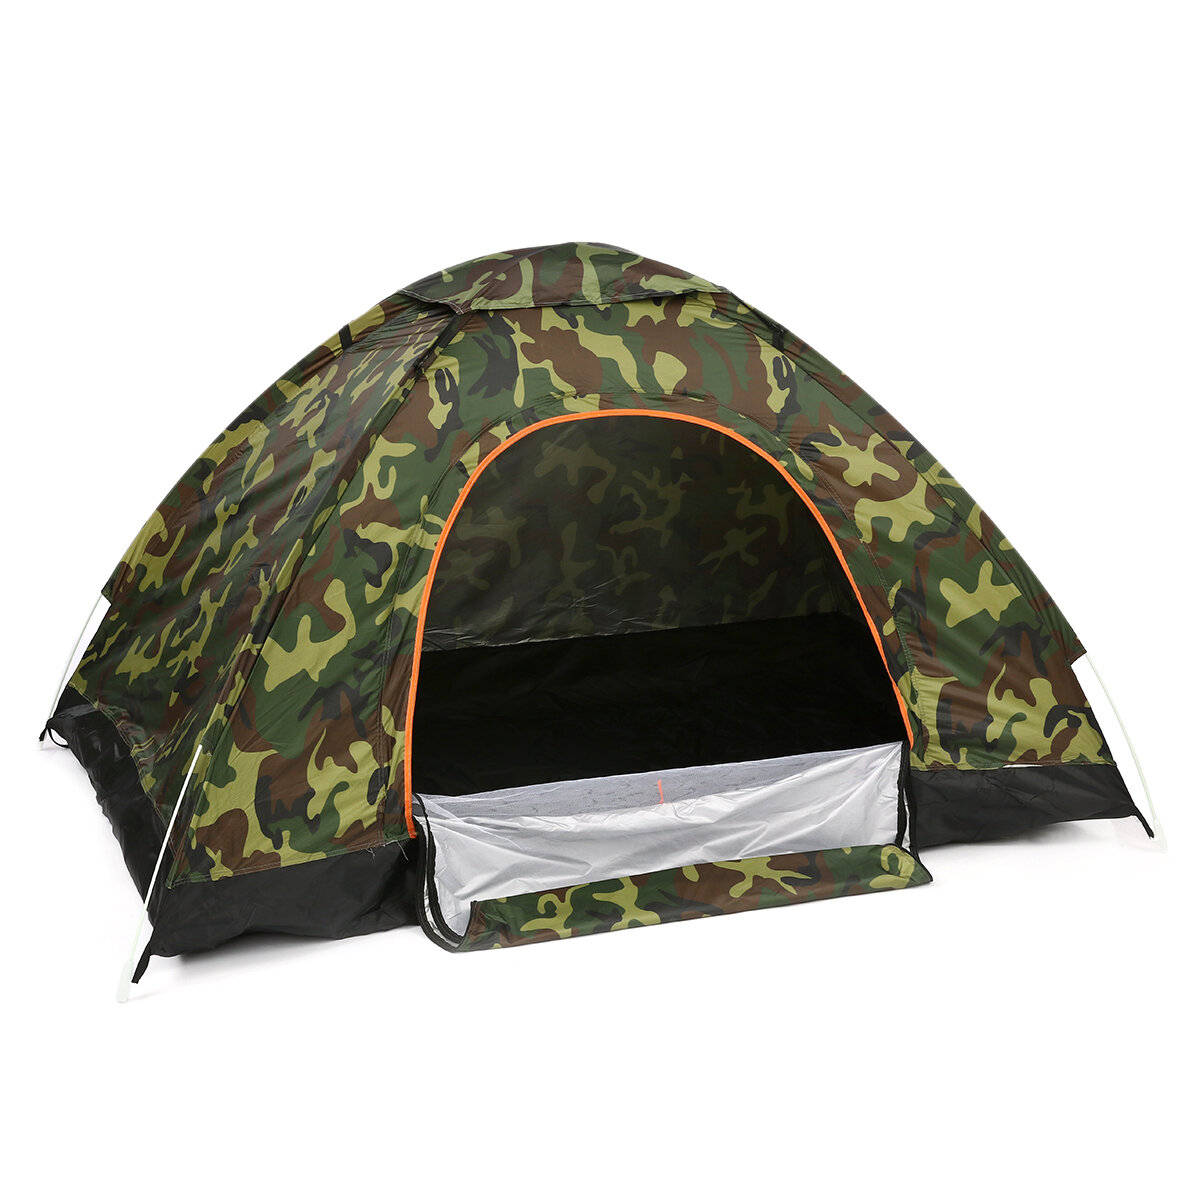 المحمولة مزدوج الباب للطي خيمة 2-3People ضد للماء خيمة أوتوماتيكية بالكامل في الهواء الطلق التخييم المشي لمسافات طويلة السفر خيمة ظلة